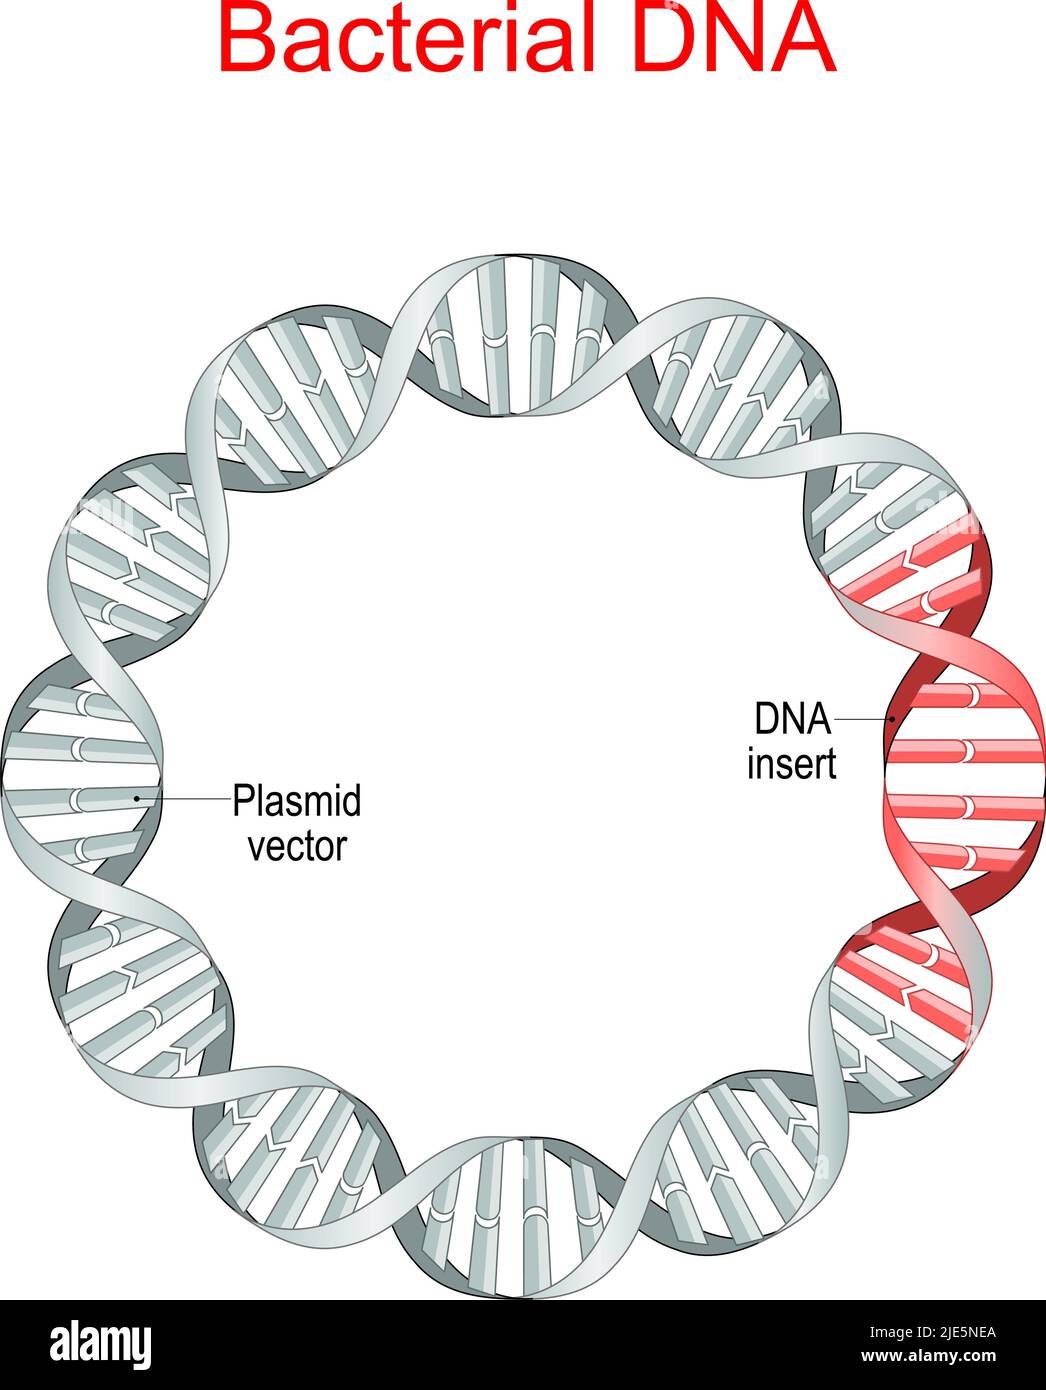 DNA batterico il plasmide è una piccola molecola di DNA extracromosomiale. Vettore plasmidico, inserto di sequenze di DNA ricombinante. Ingegneria genetica. Antibiotico Illustrazione Vettoriale